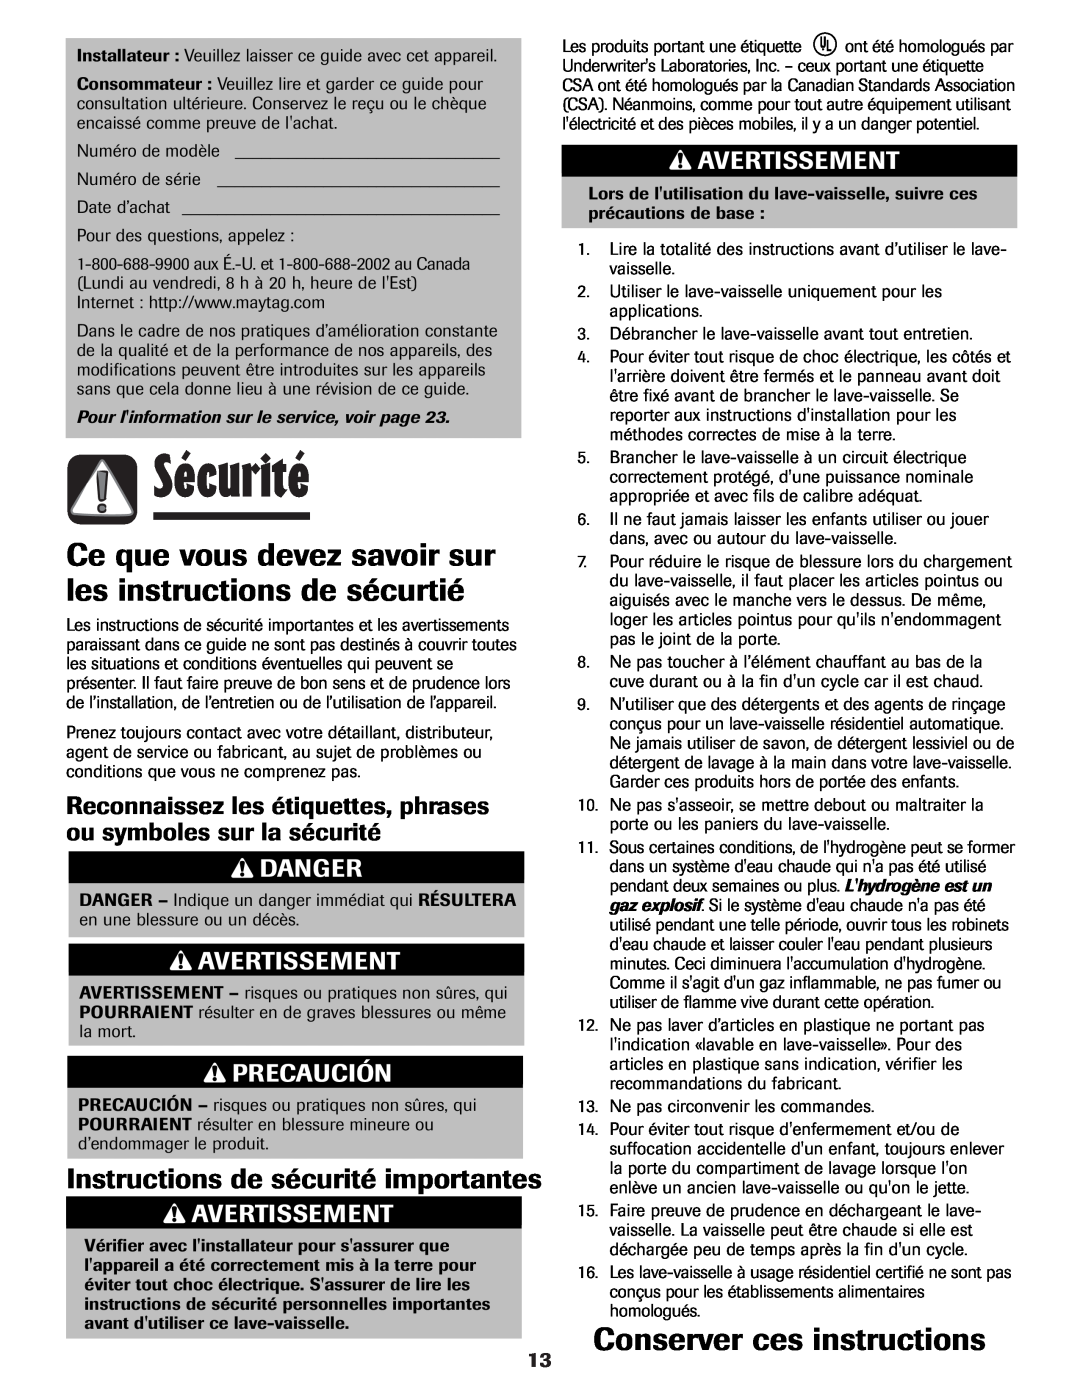 Maytag MDB-7 Sécurité, Ce que vous devez savoir sur les instructions de sécurtié, Conserver ces instructions, Precaución 